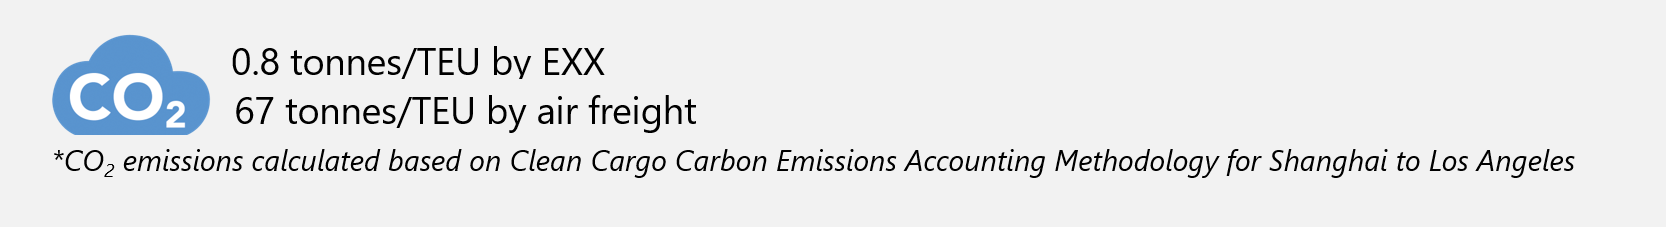 二氧化碳排放vs空运